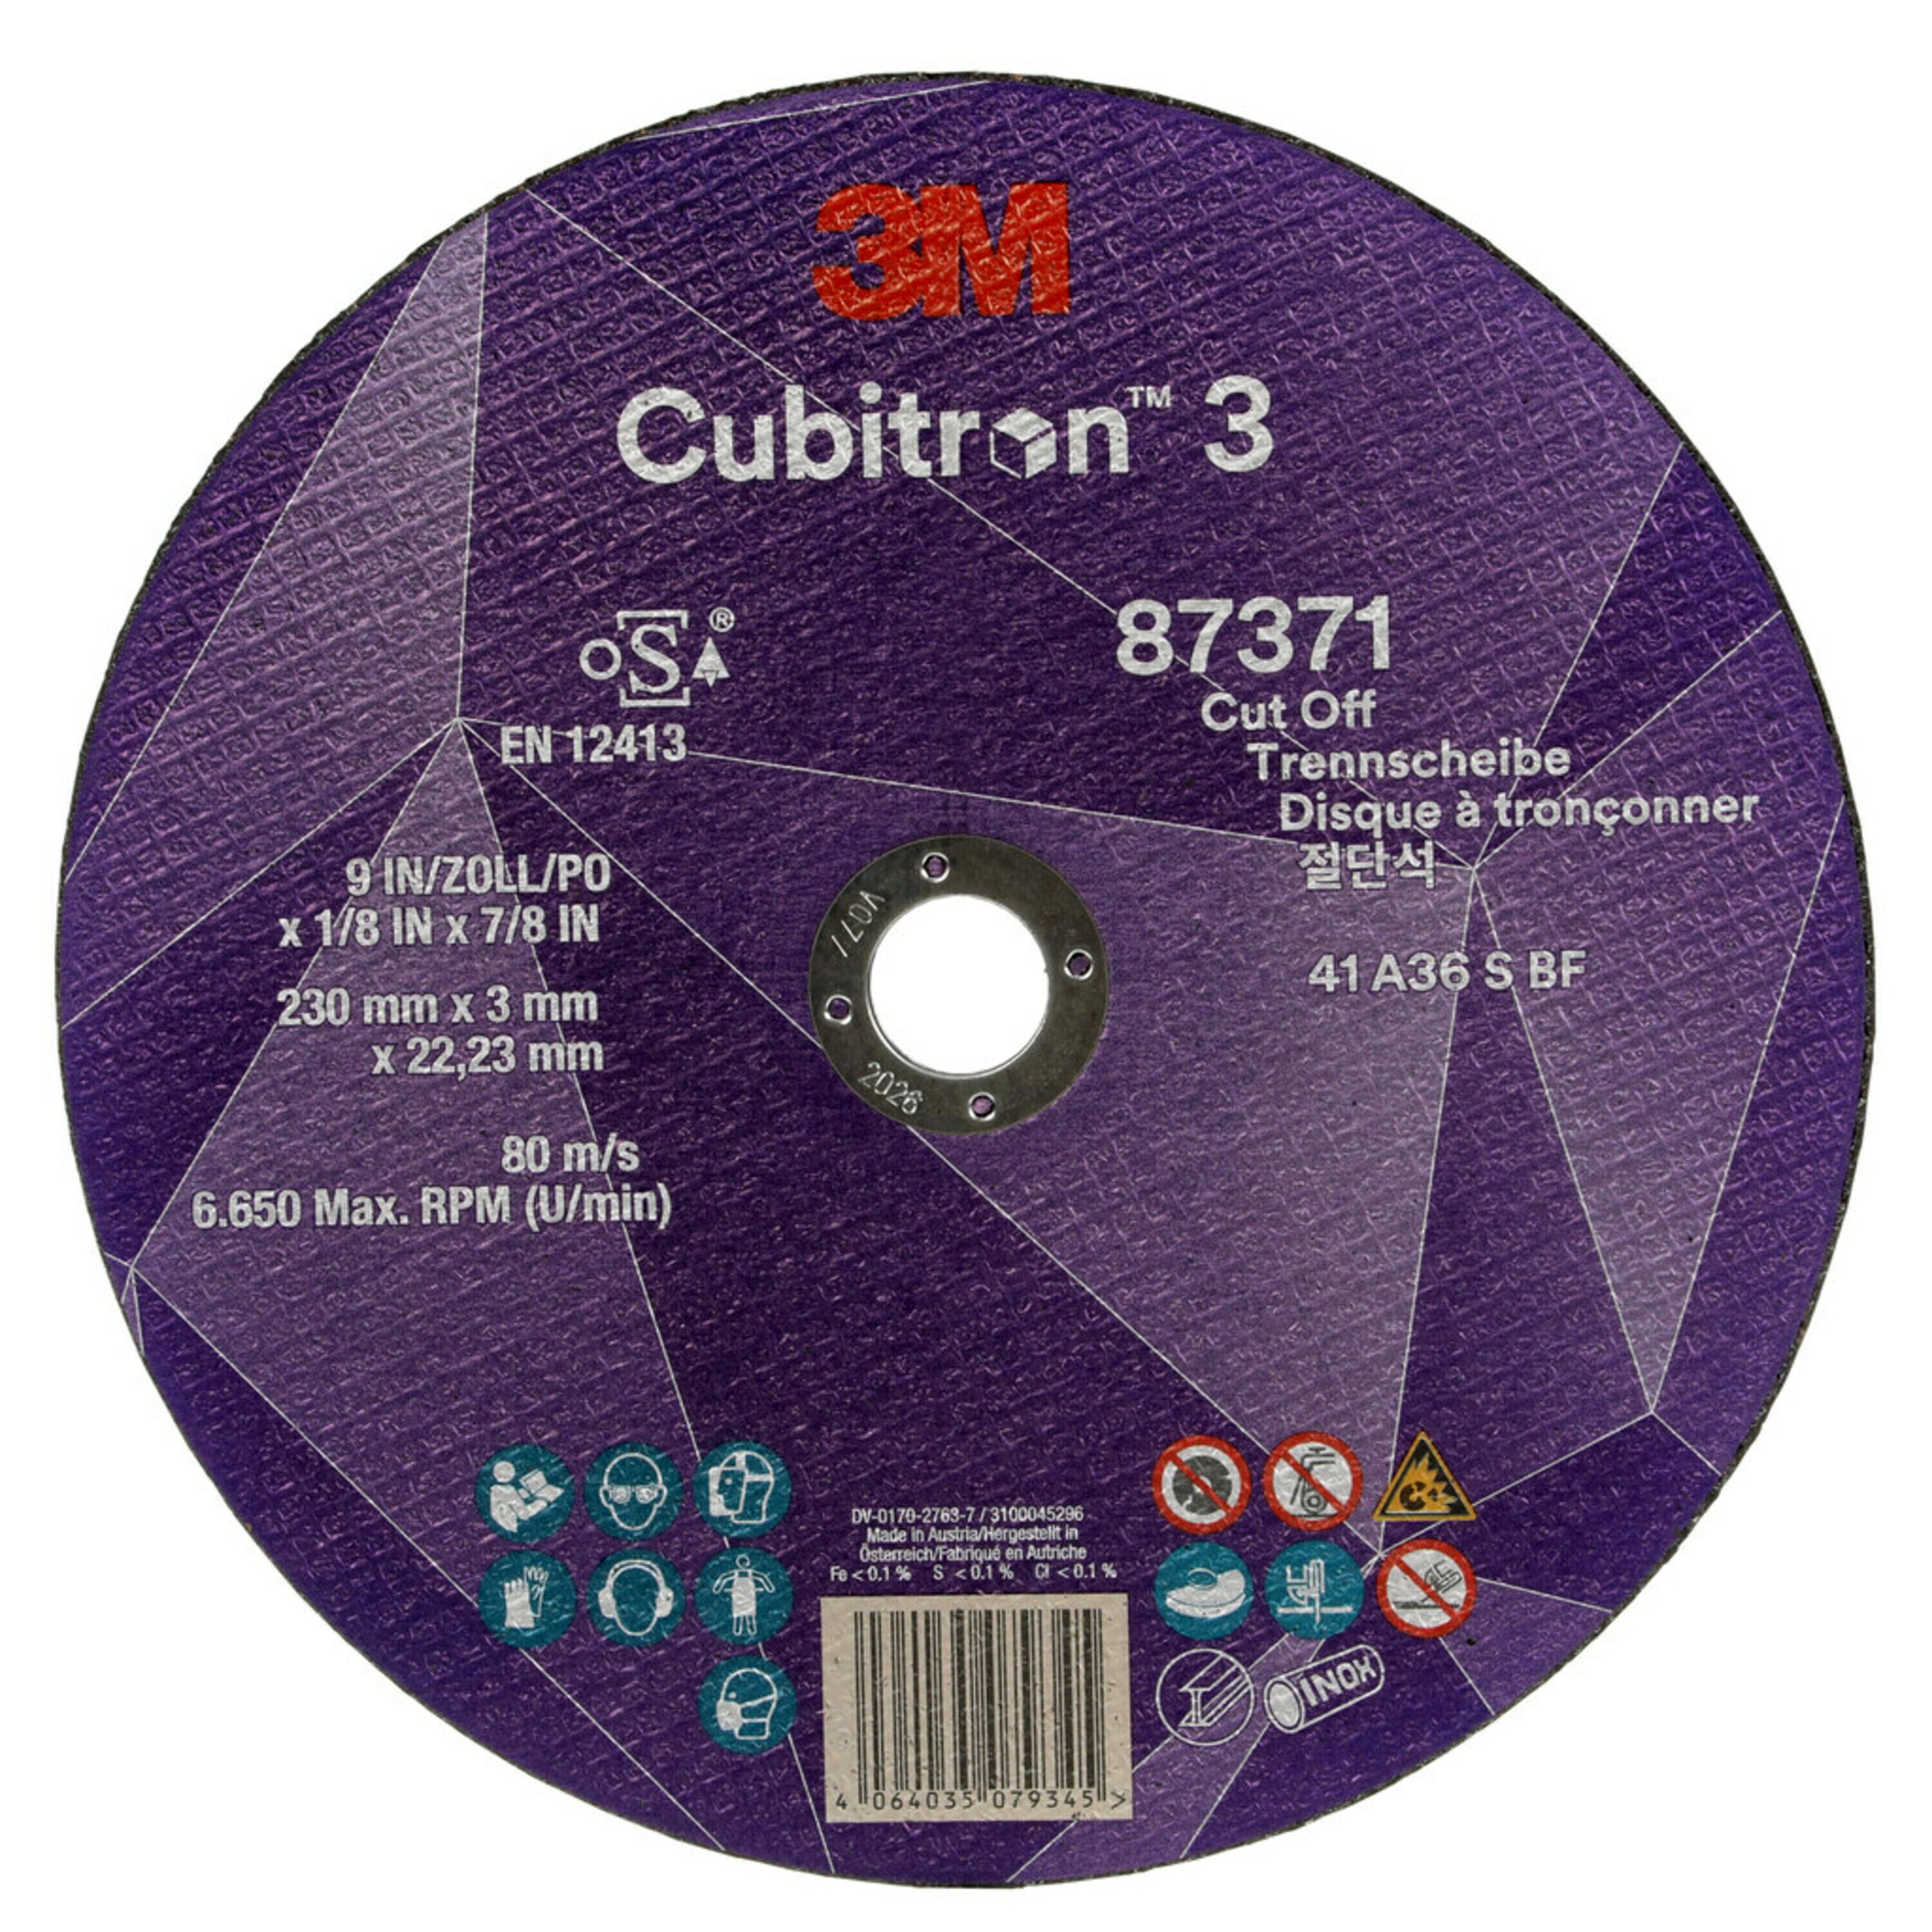 3M Cubitron 3 disco da taglio, 230 mm, 3 mm, 22,23 mm, 36 , tipo 41 #87371